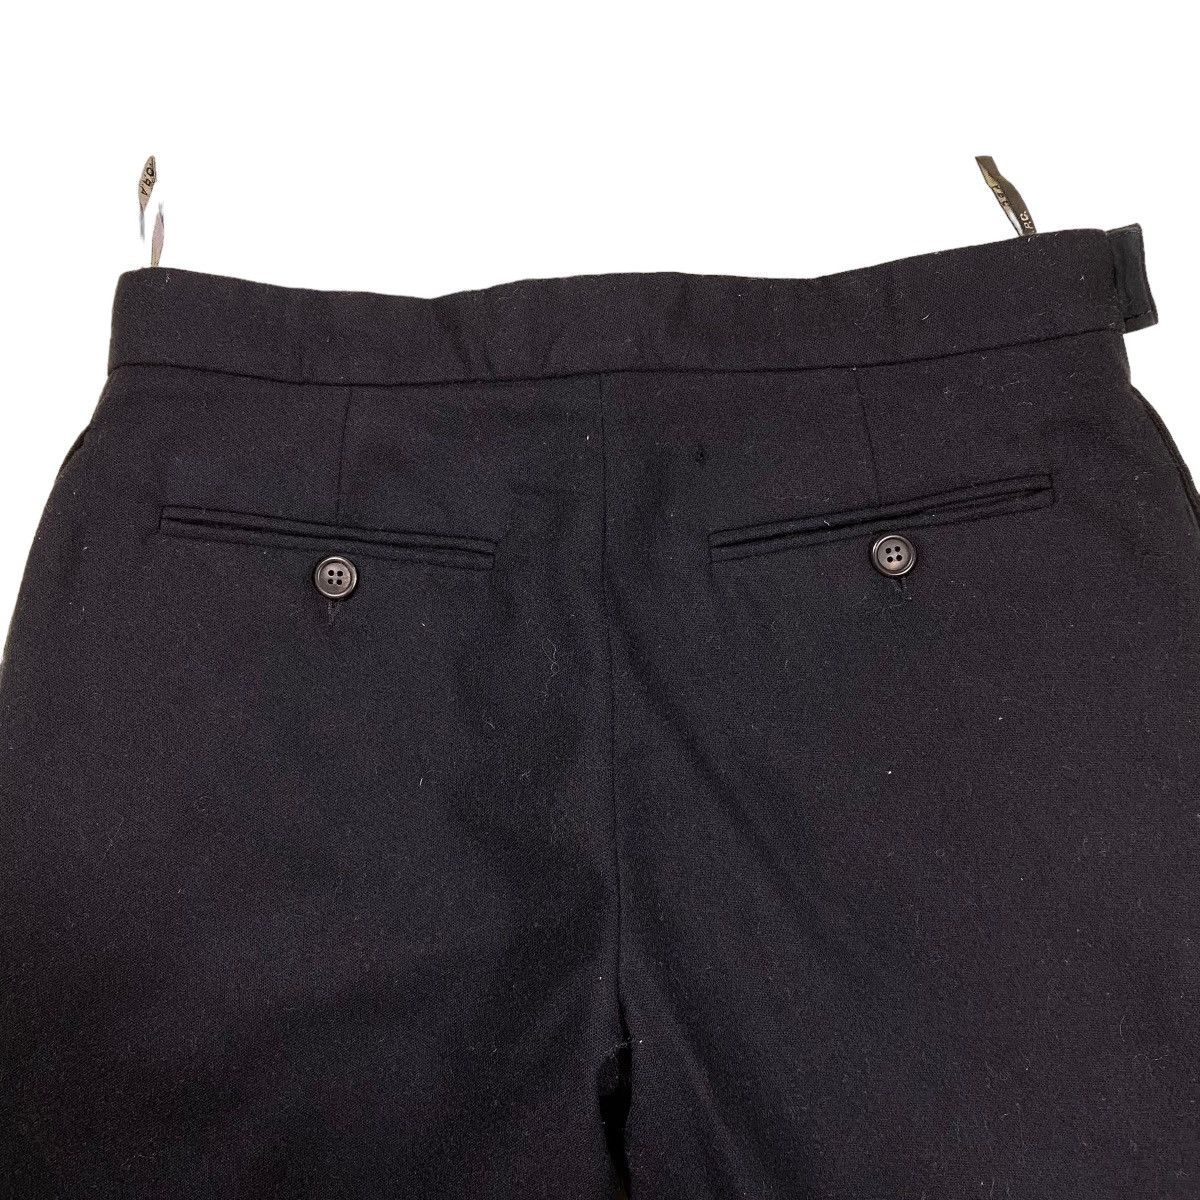 Vintage A.P.C Wool Pants Size 30 Black Colour - 9